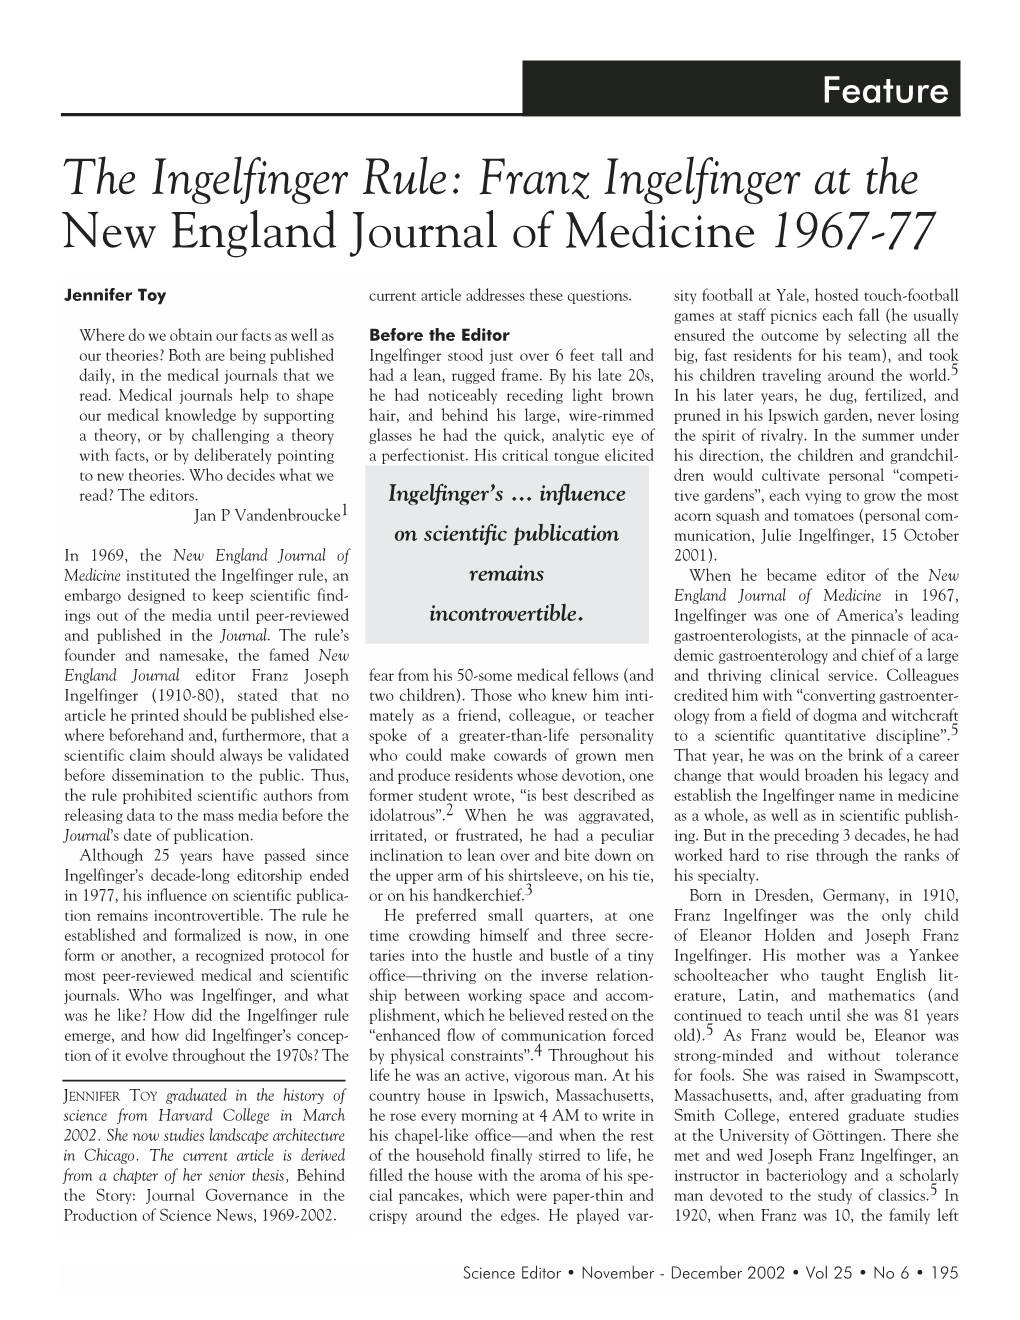 The Ingelfinger Rule: Franz Ingelfinger at the New England Journal of Medicine 1967-77